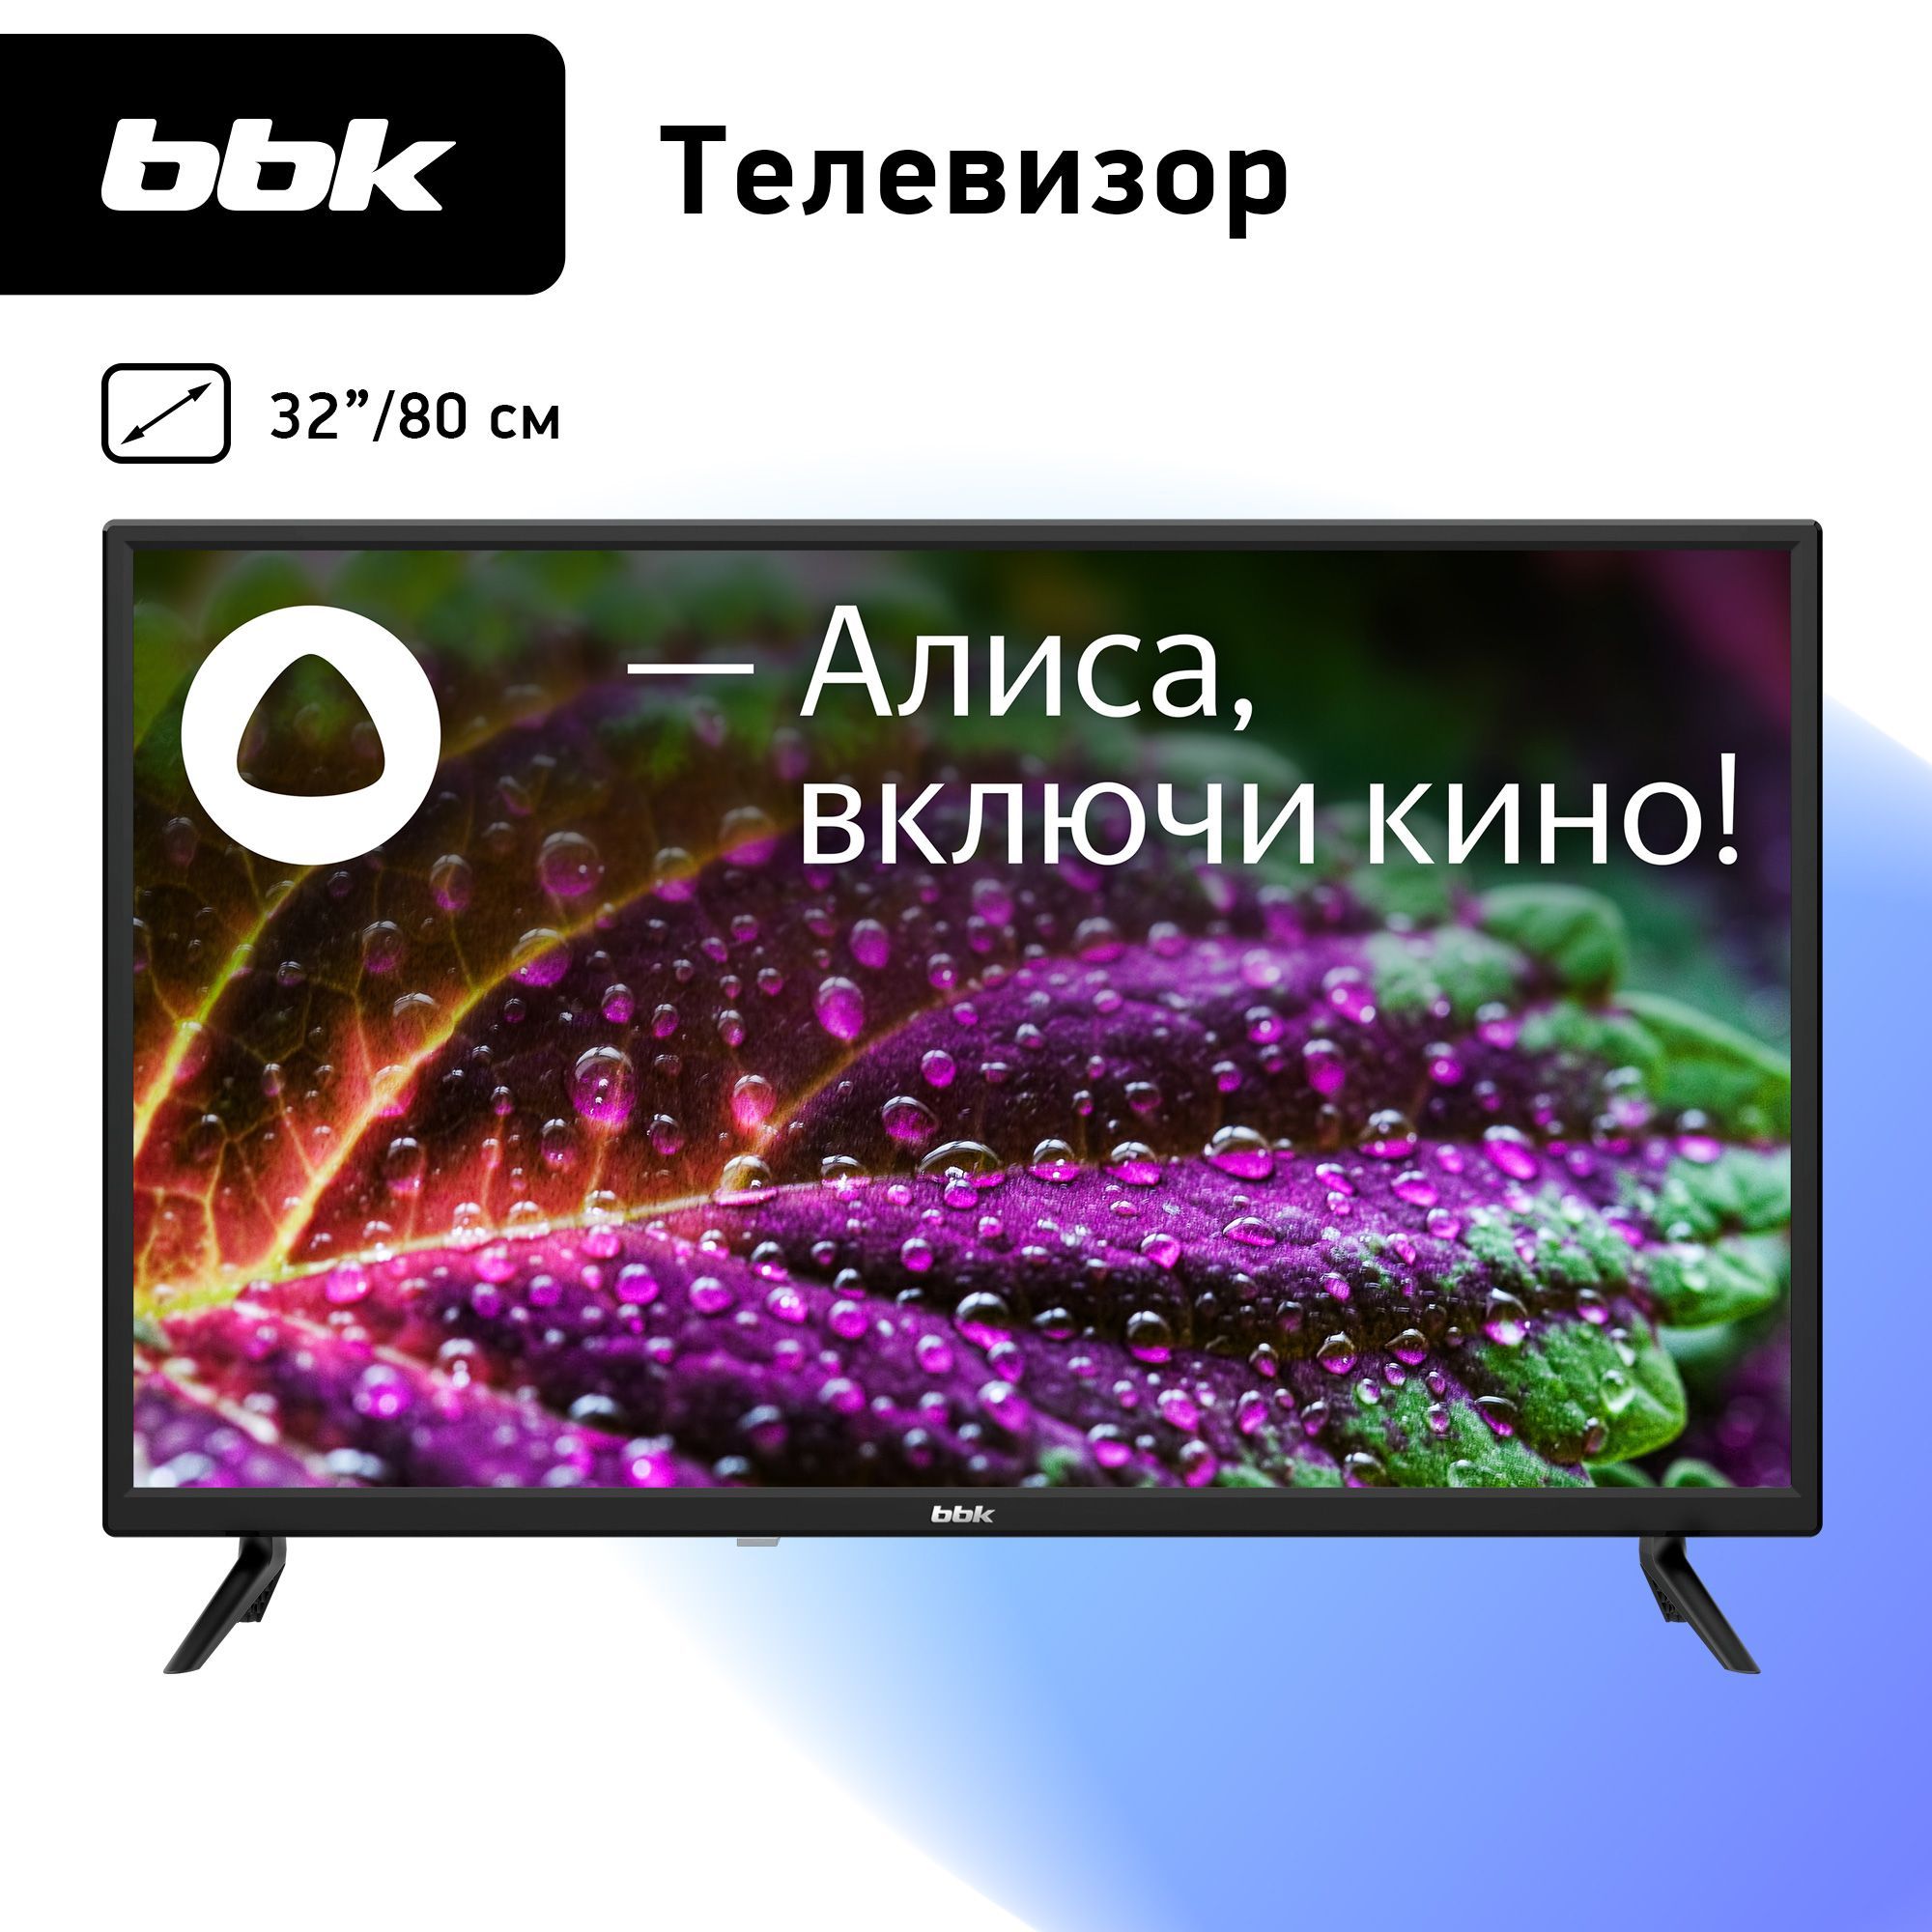 BBKТелевизор32LEX-7211/TS2C32"HD,черный